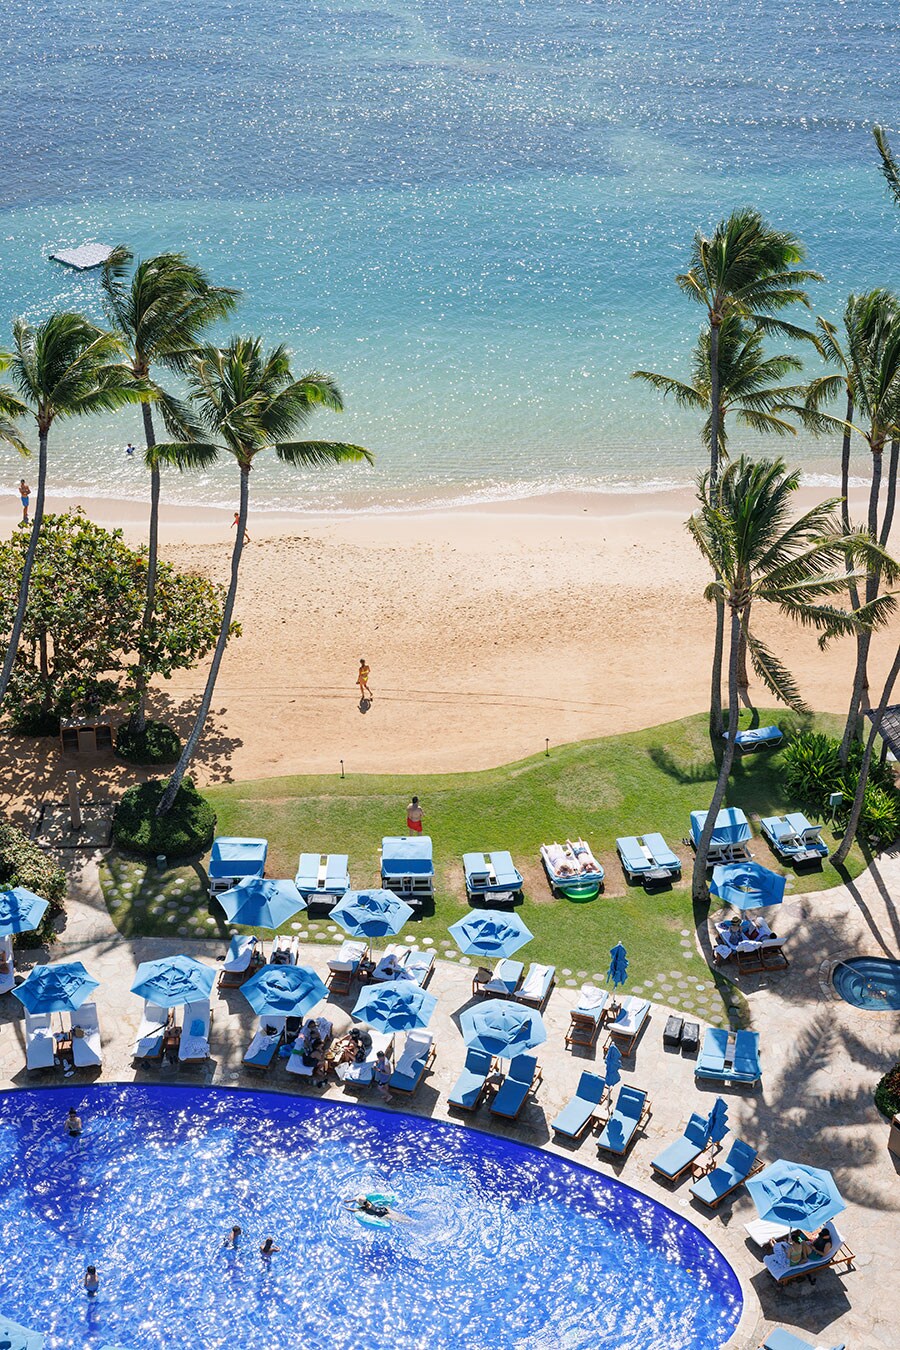 ホテルの目の前の白い砂浜は、東西240mにわたって広がっている。